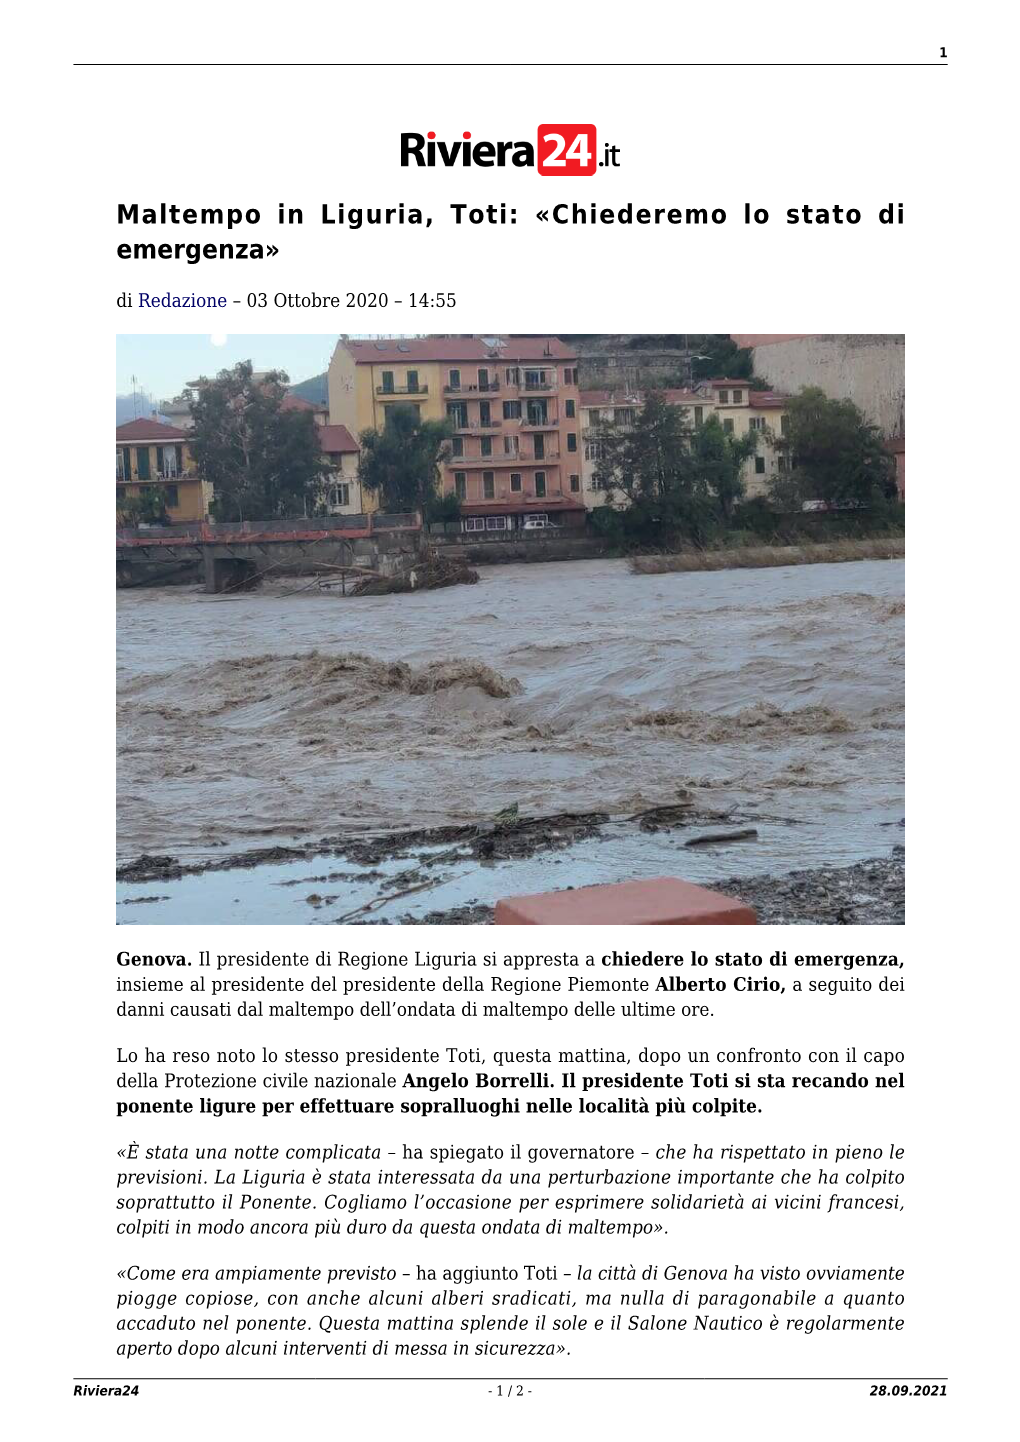 Maltempo in Liguria, Toti: «Chiederemo Lo Stato Di Emergenza»